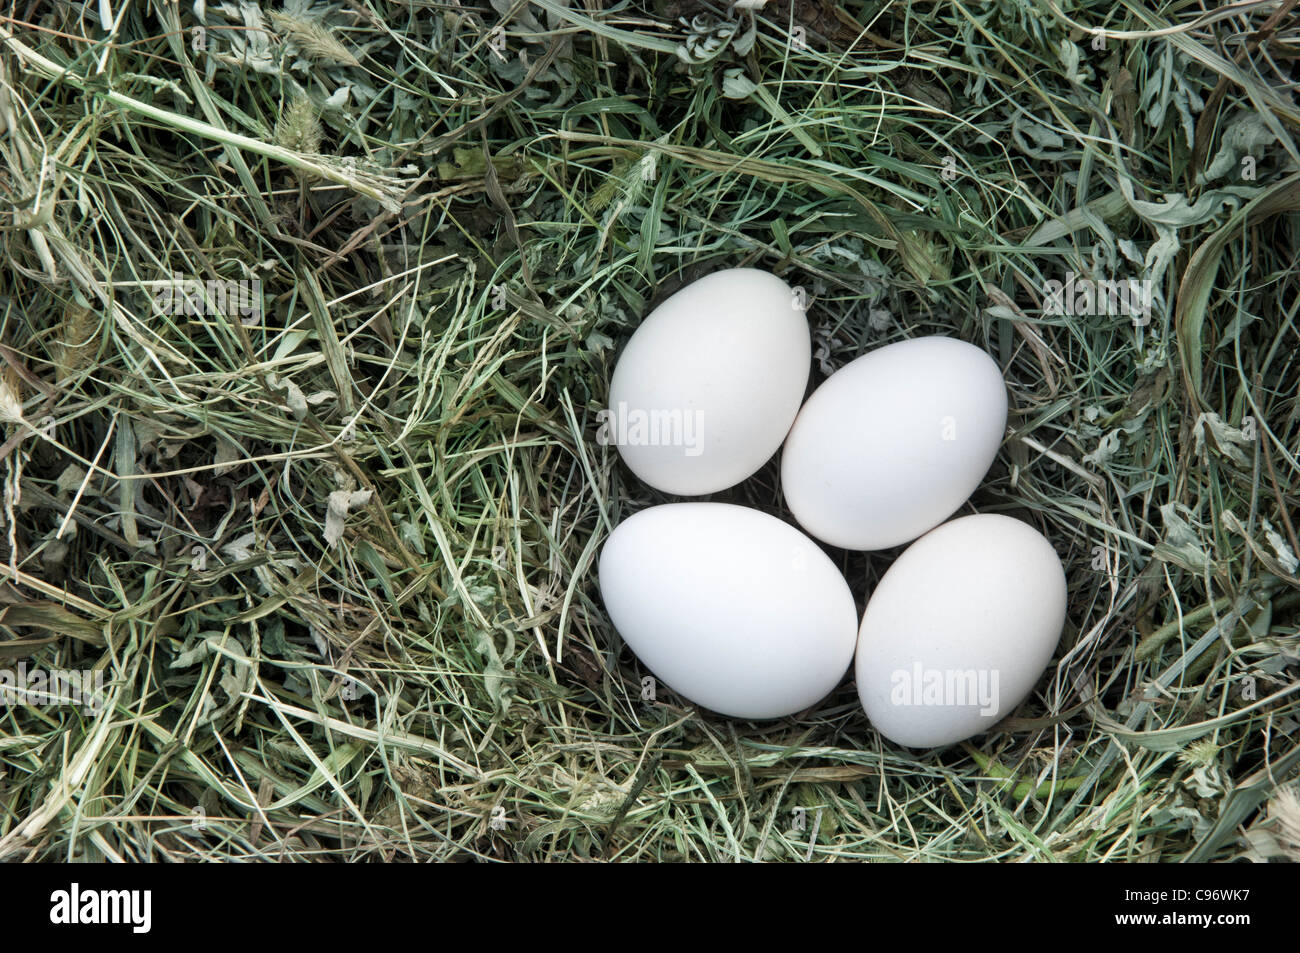 Los huevos de pollo en el nido Foto de stock